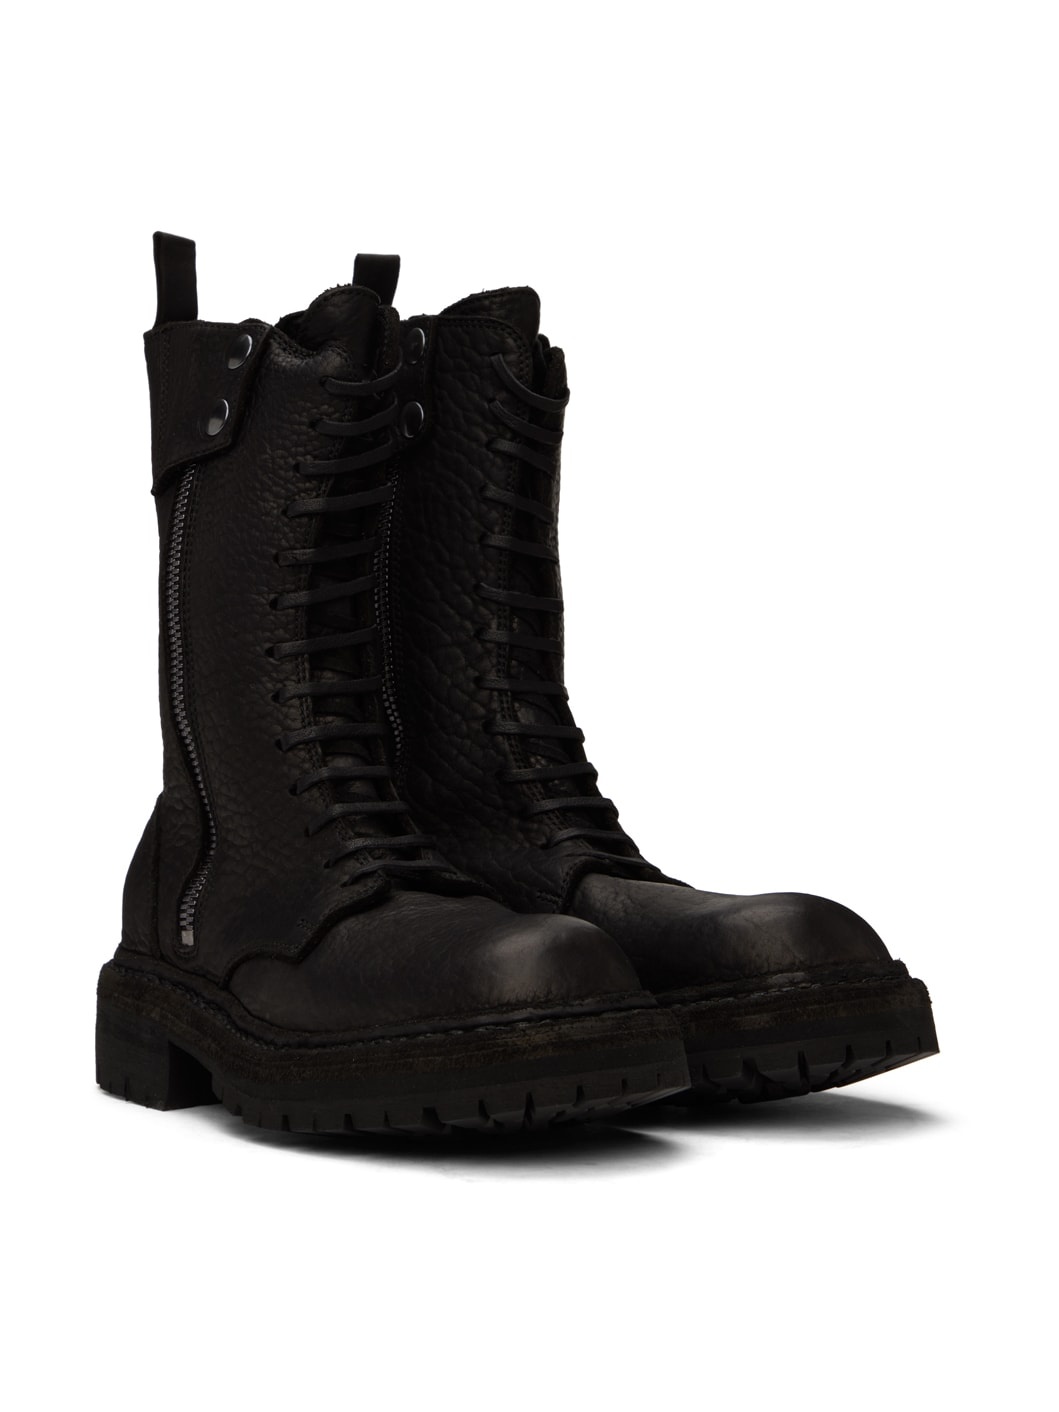 Black StyleZeitgeist Edition ER01V Boots - 4